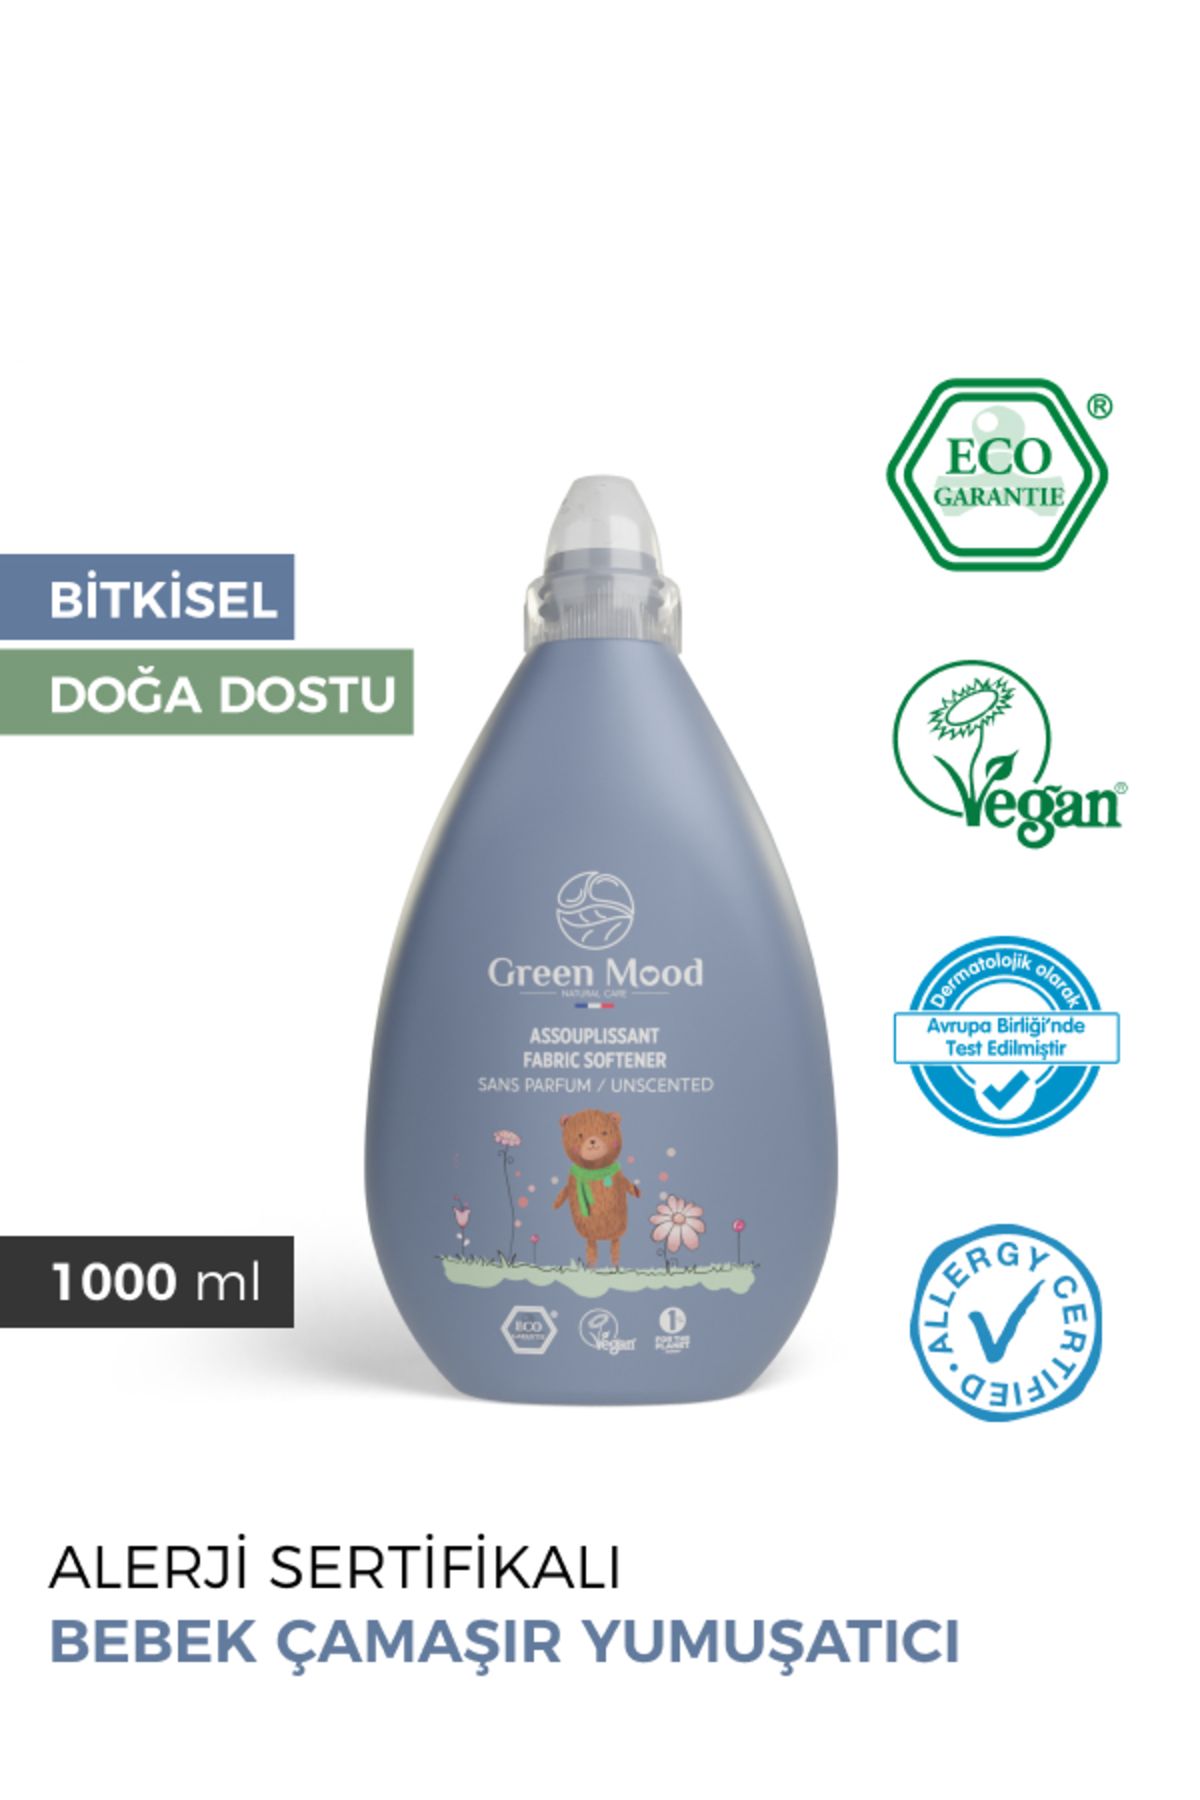 Green Mood Bitkisel Vegan Bebek Çamaşır Yumuşatıcı Parfümsüz Alerji Sertifikalı 1000 ml